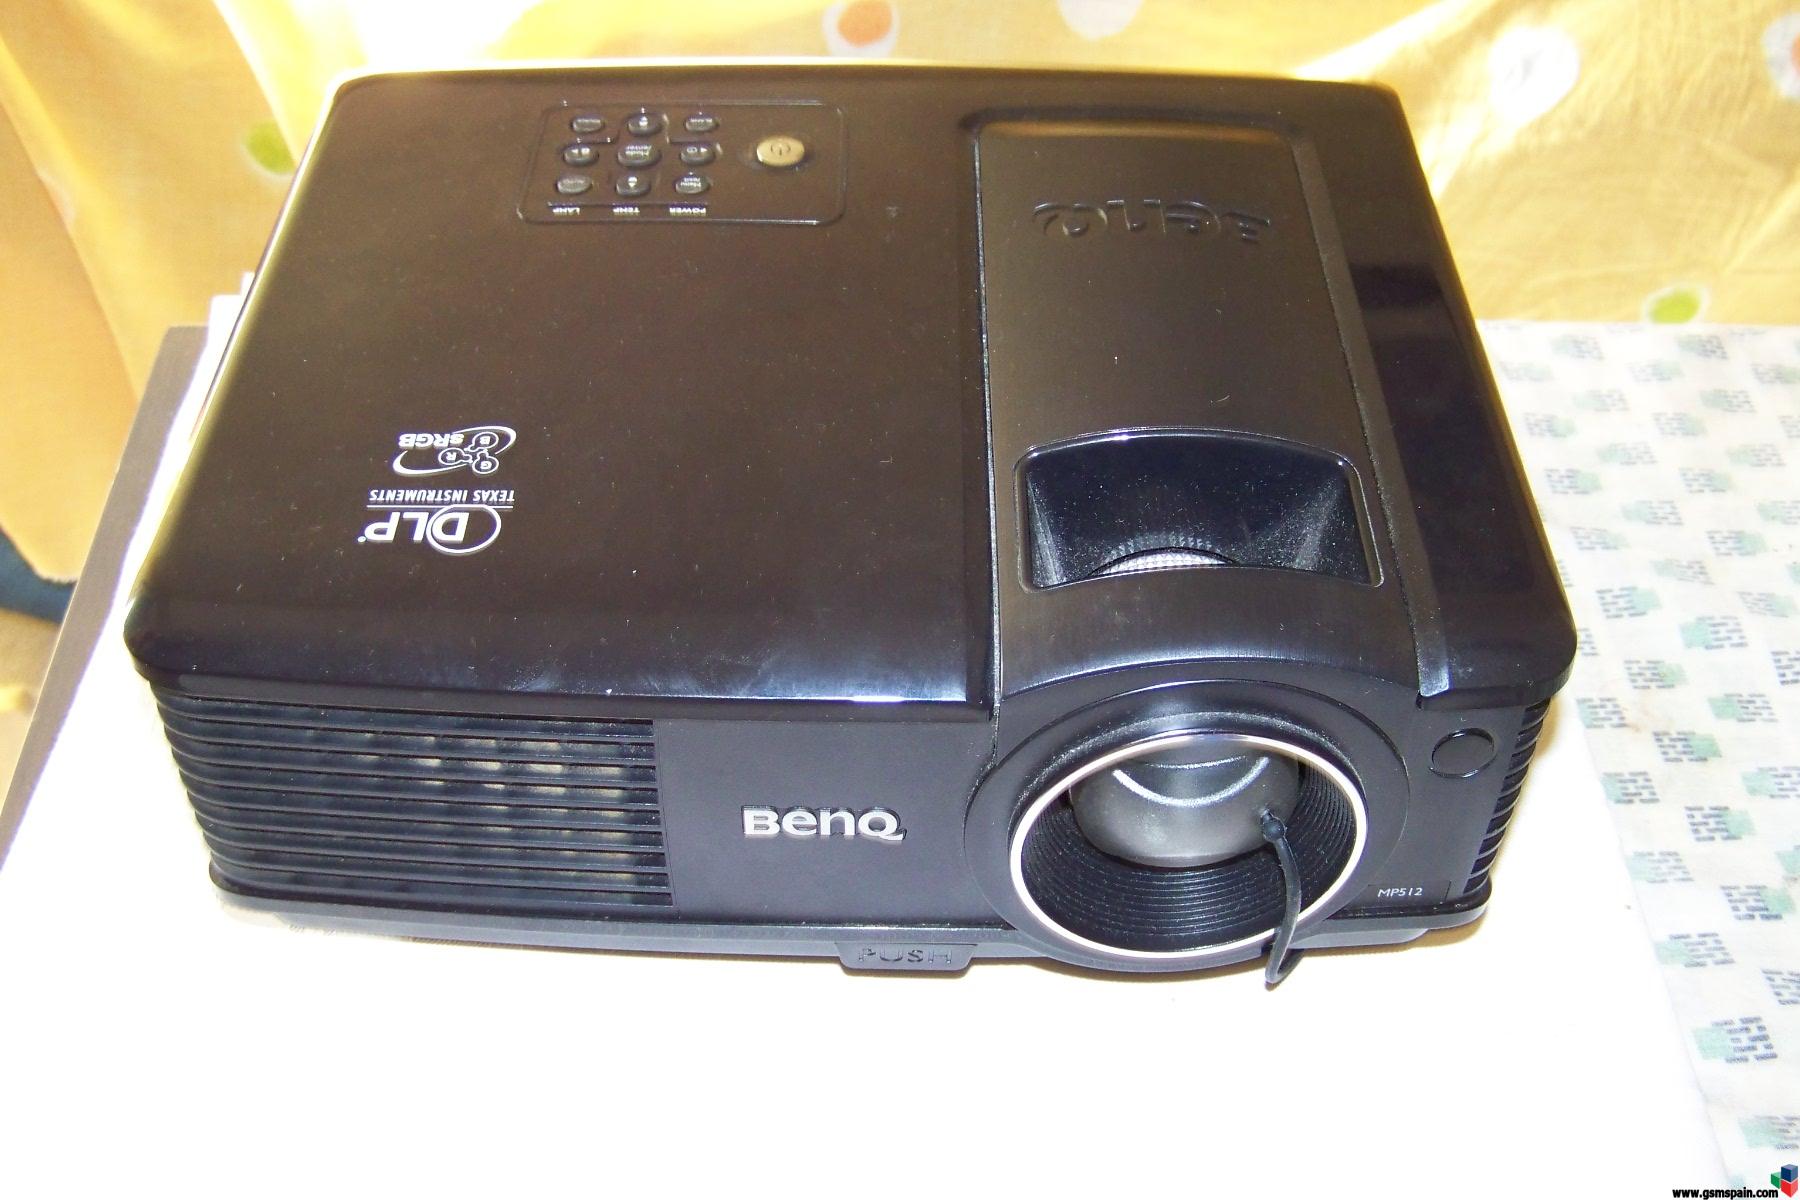 proyector benq  mp512    usado le quedan 1200 horas de lampara  por 140 eur